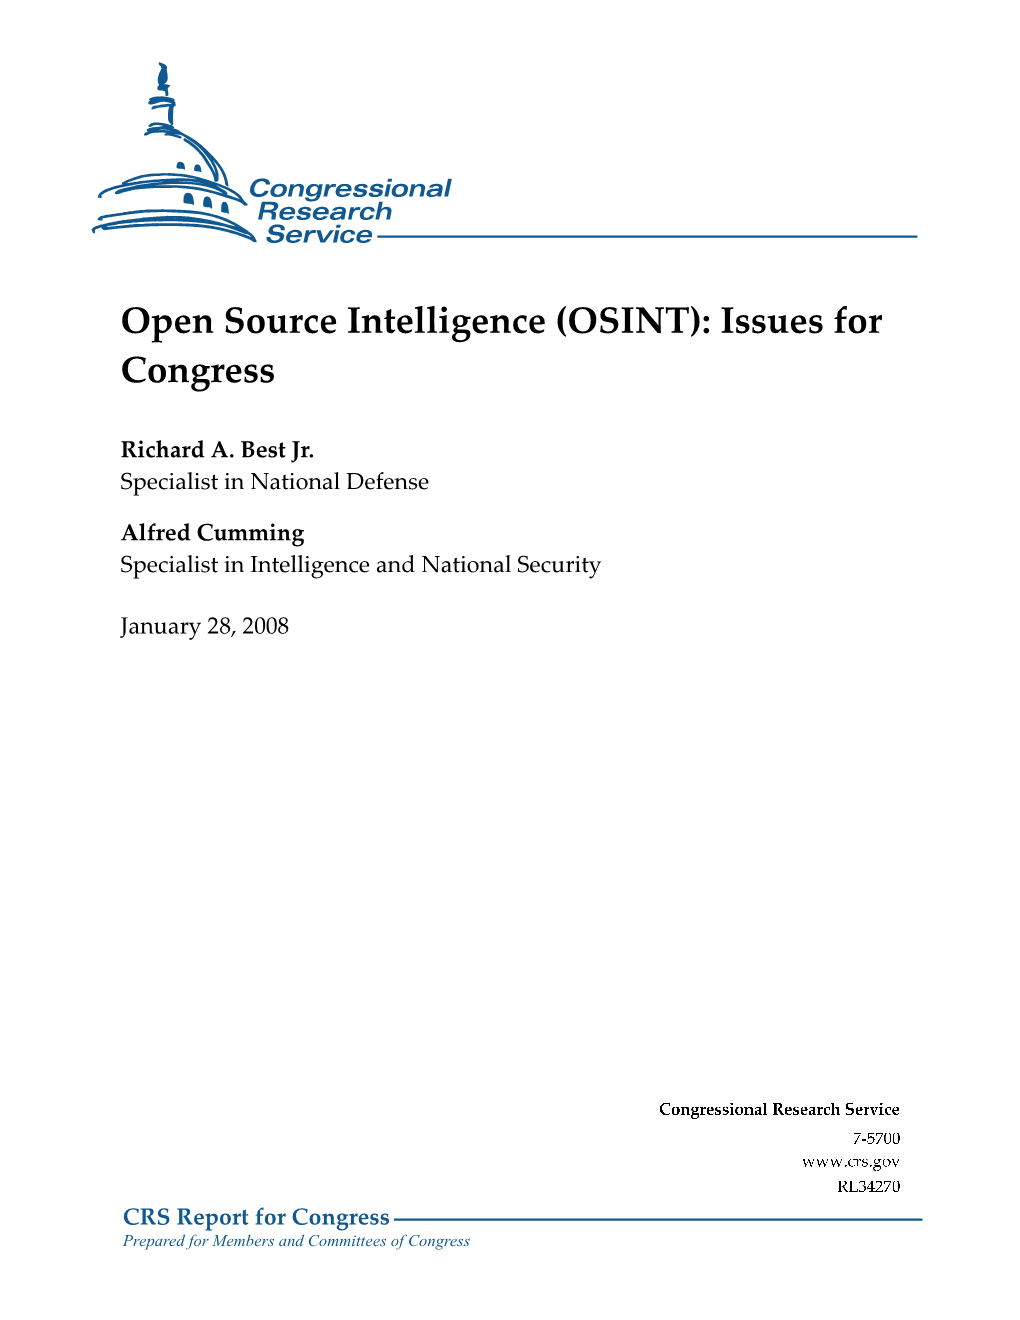 Open Source Intelligence (OSINT)